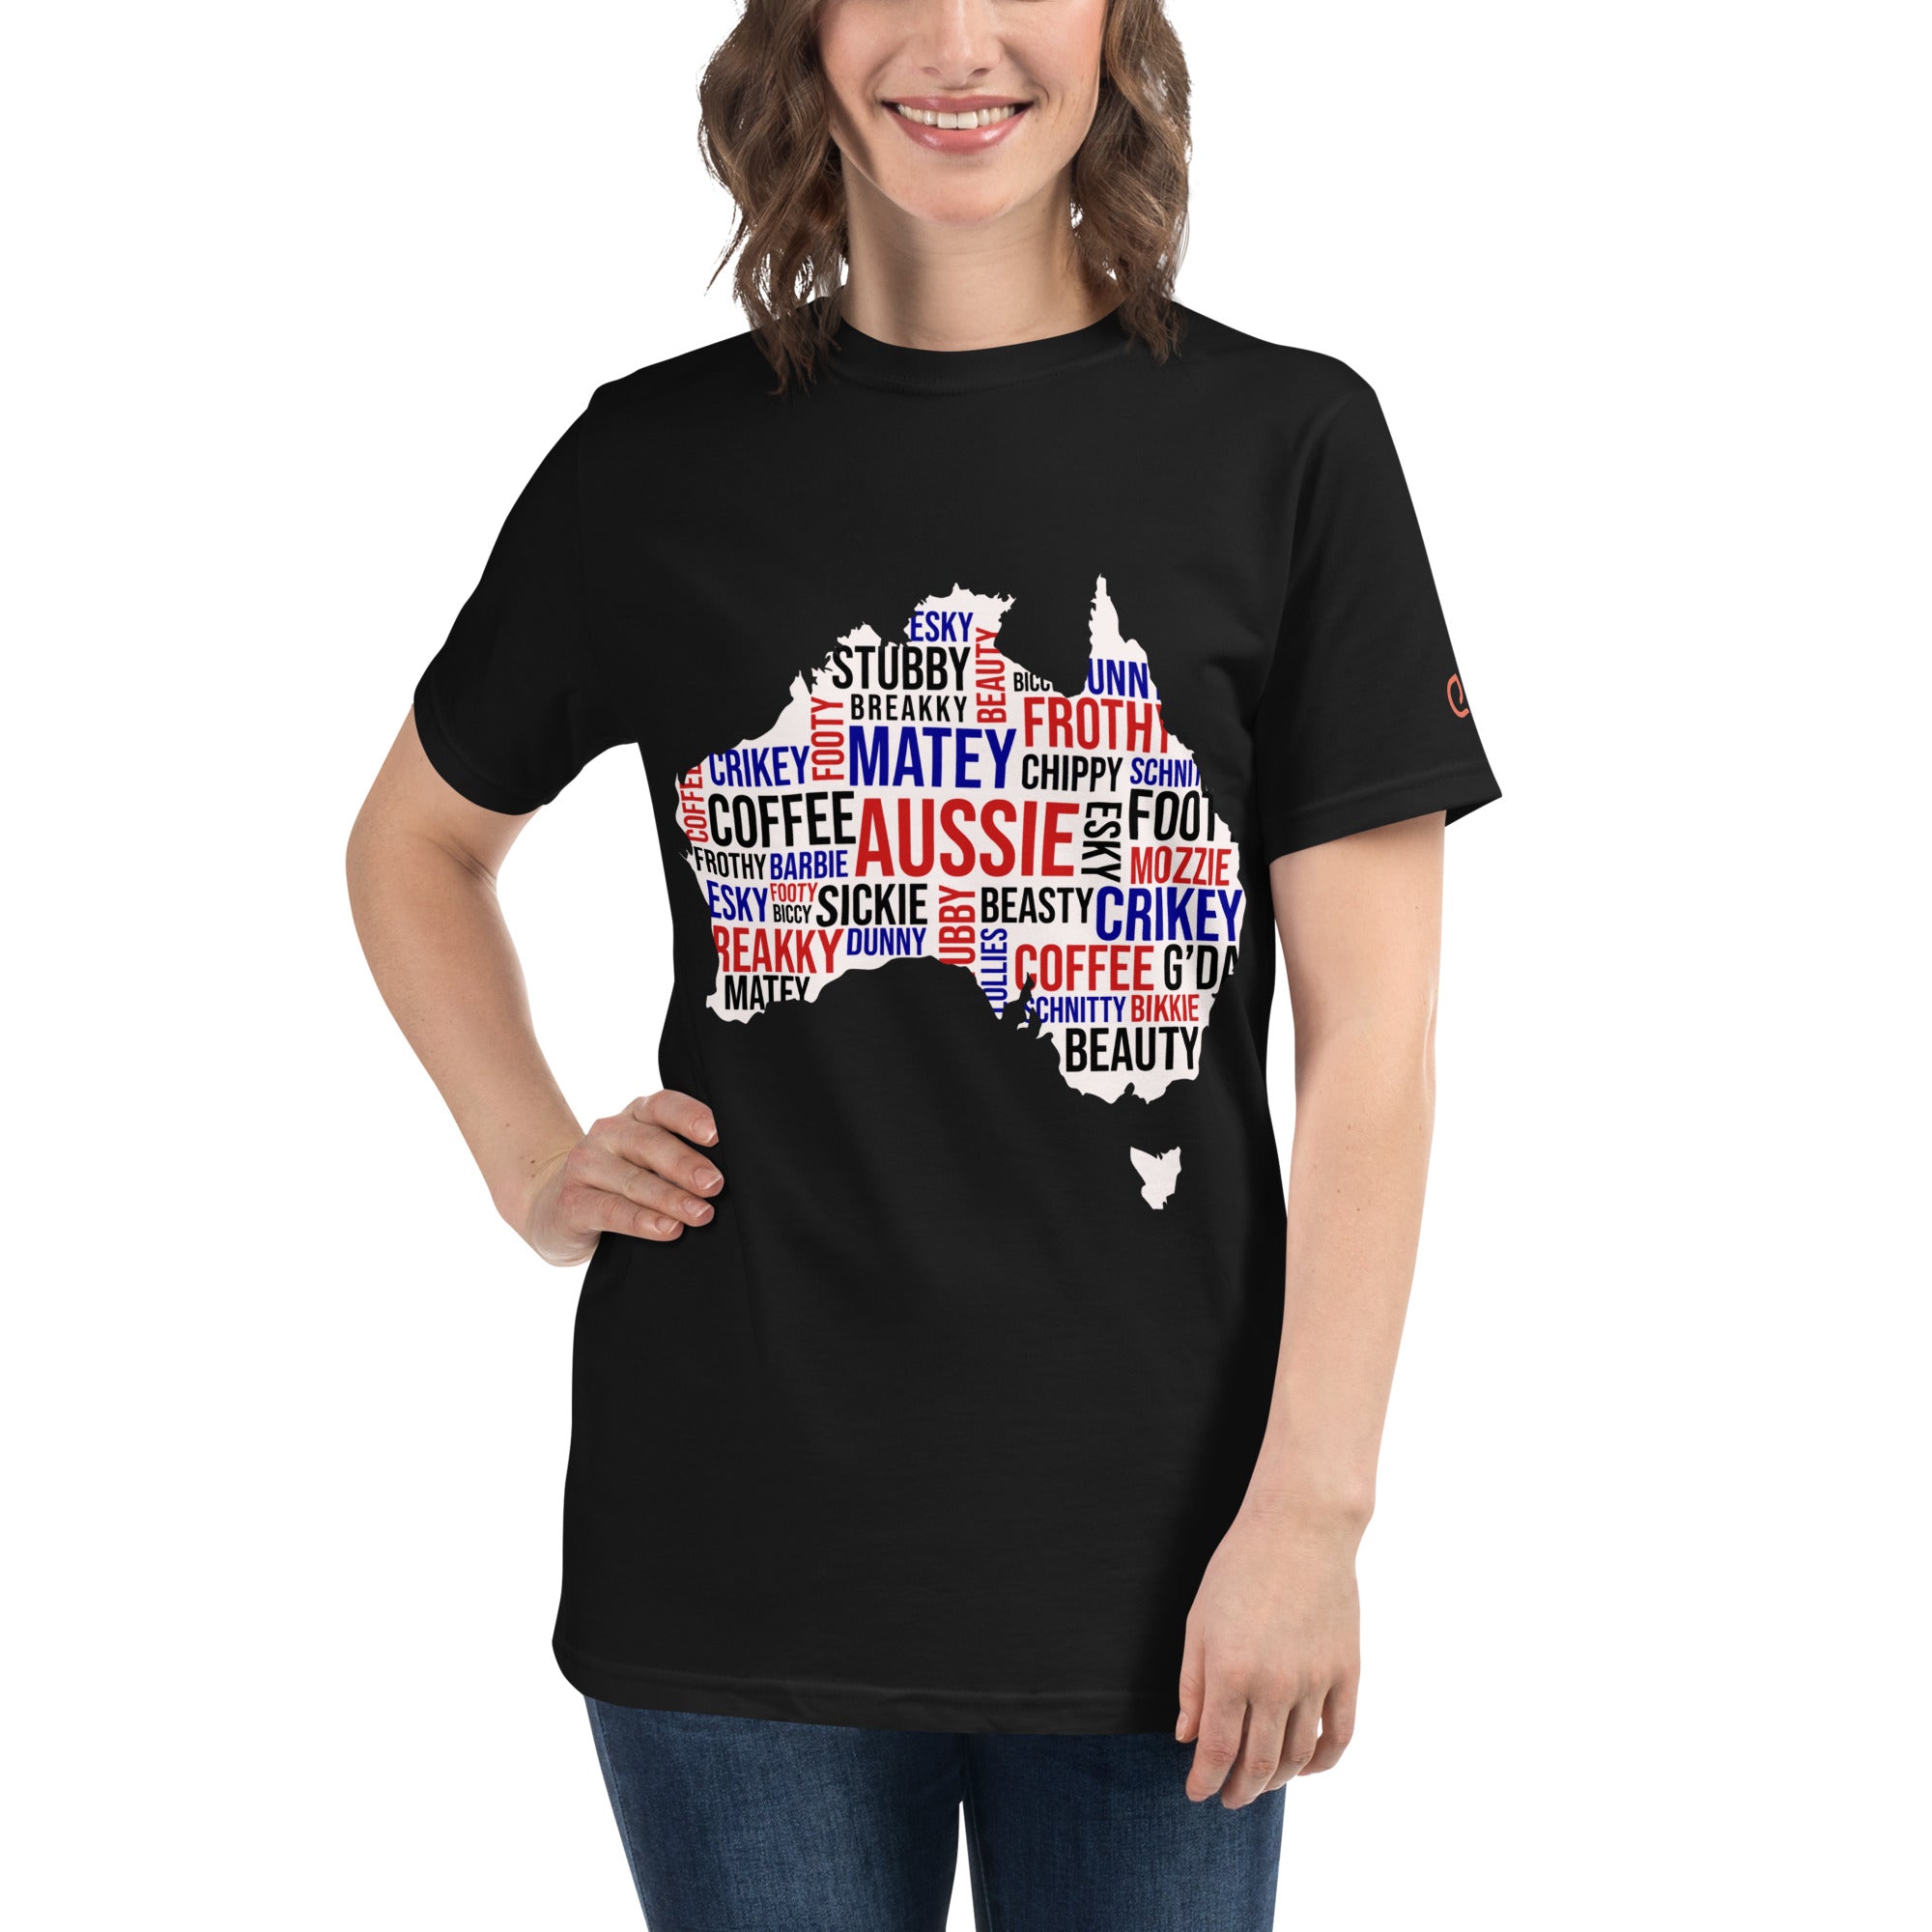 Women's T-Shirt: Aussie collection